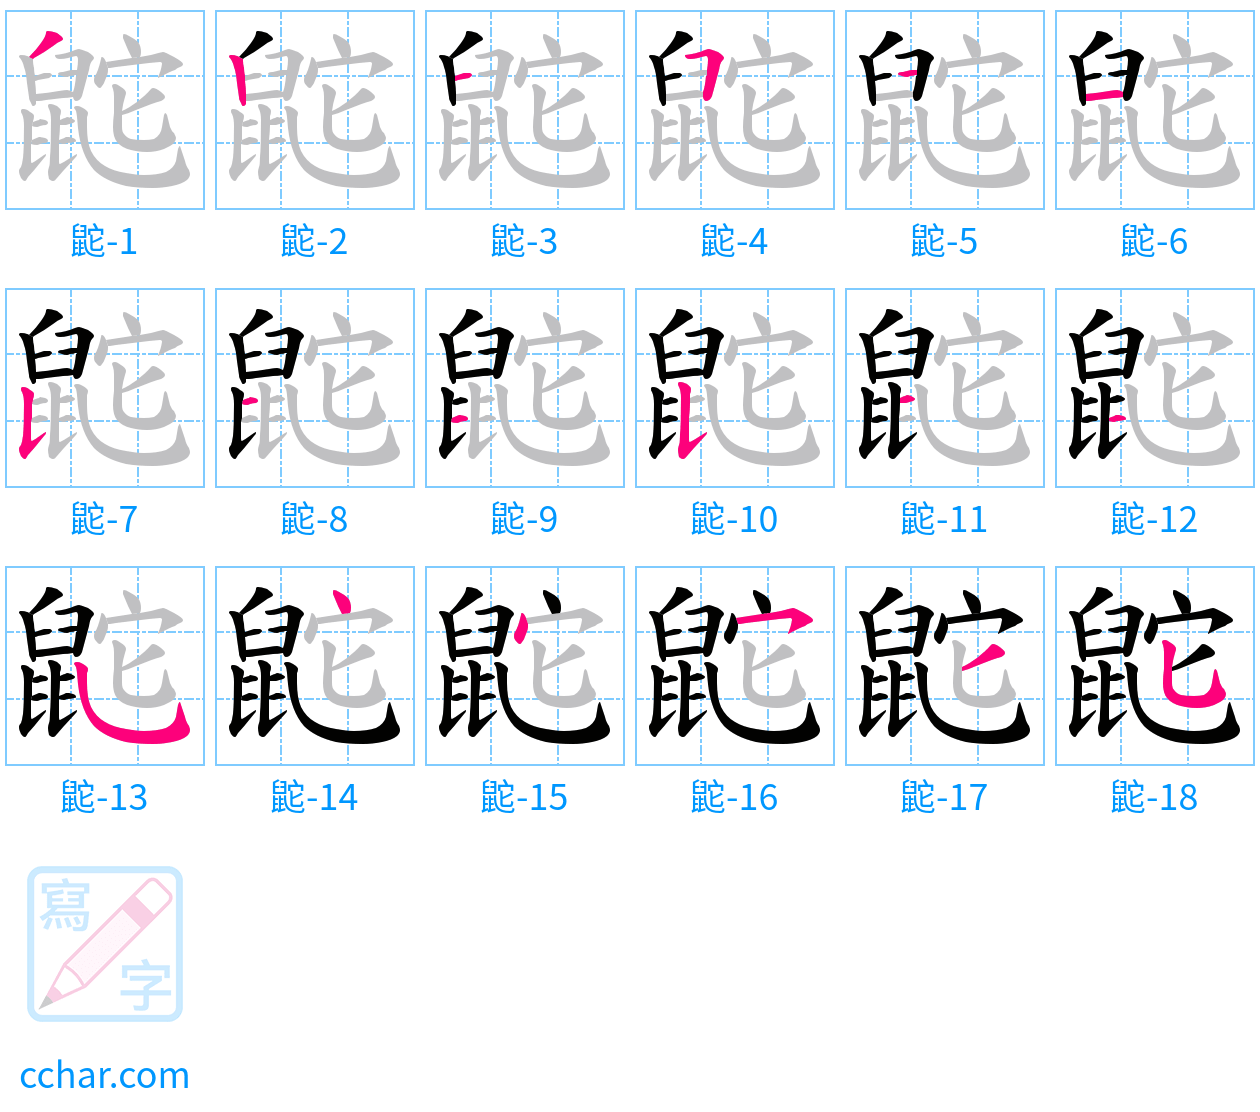 鼧 stroke order step-by-step diagram